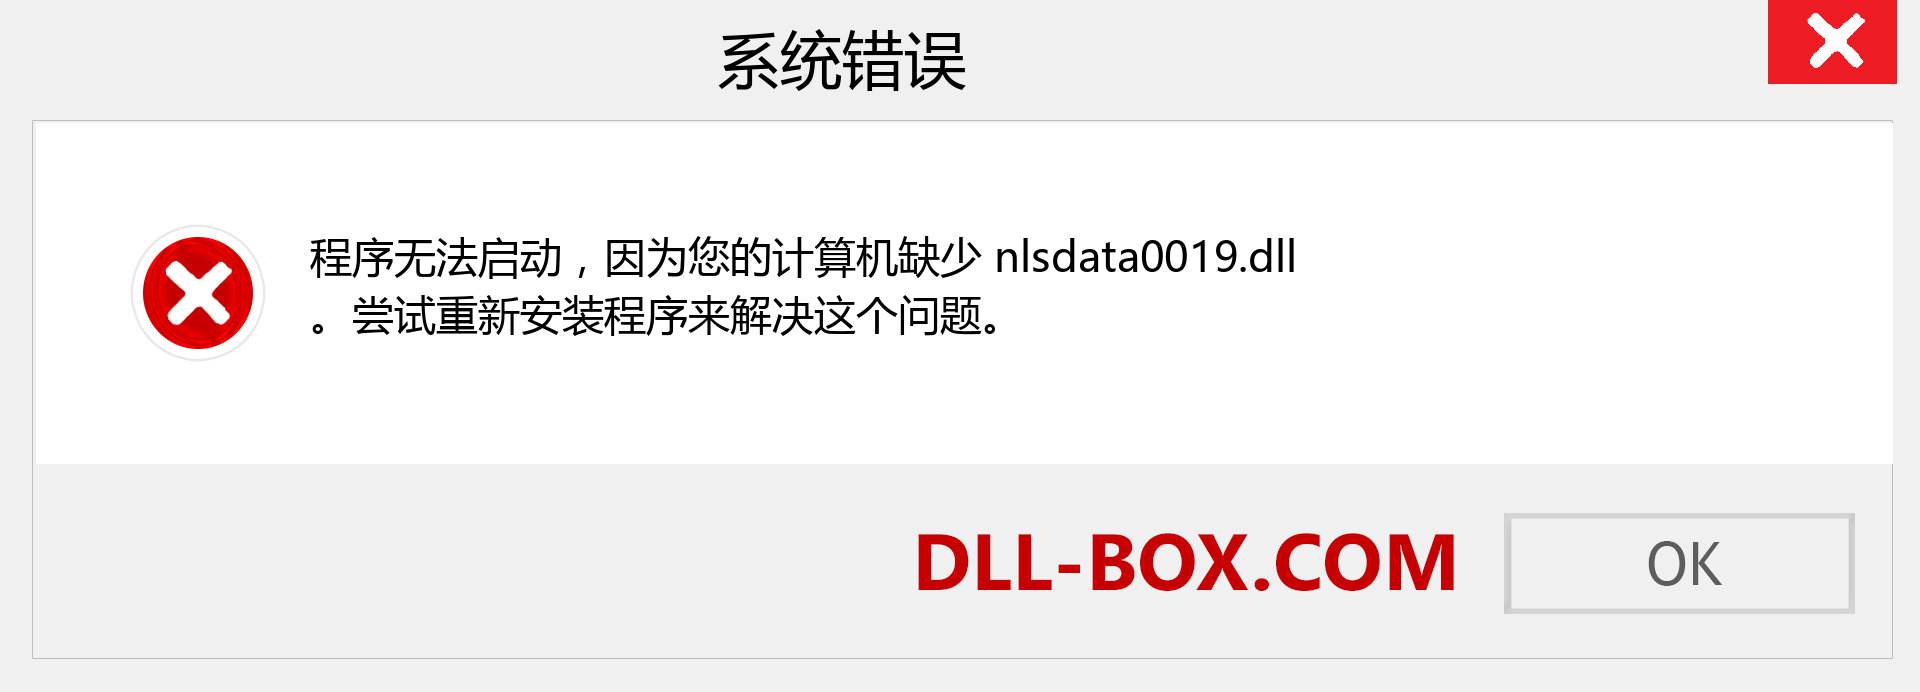 nlsdata0019.dll 文件丢失？。 适用于 Windows 7、8、10 的下载 - 修复 Windows、照片、图像上的 nlsdata0019 dll 丢失错误